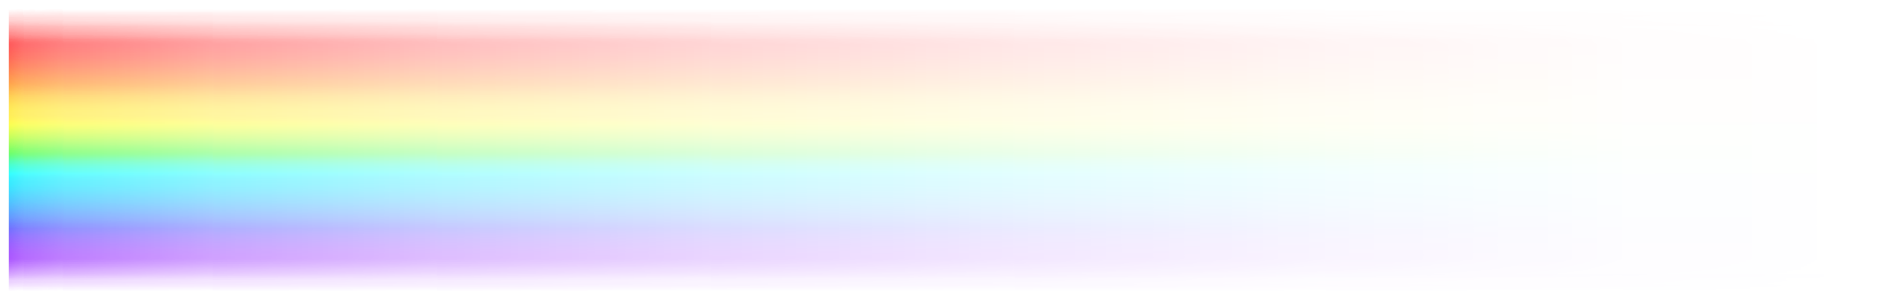 彩虹装饰lgbt横线光